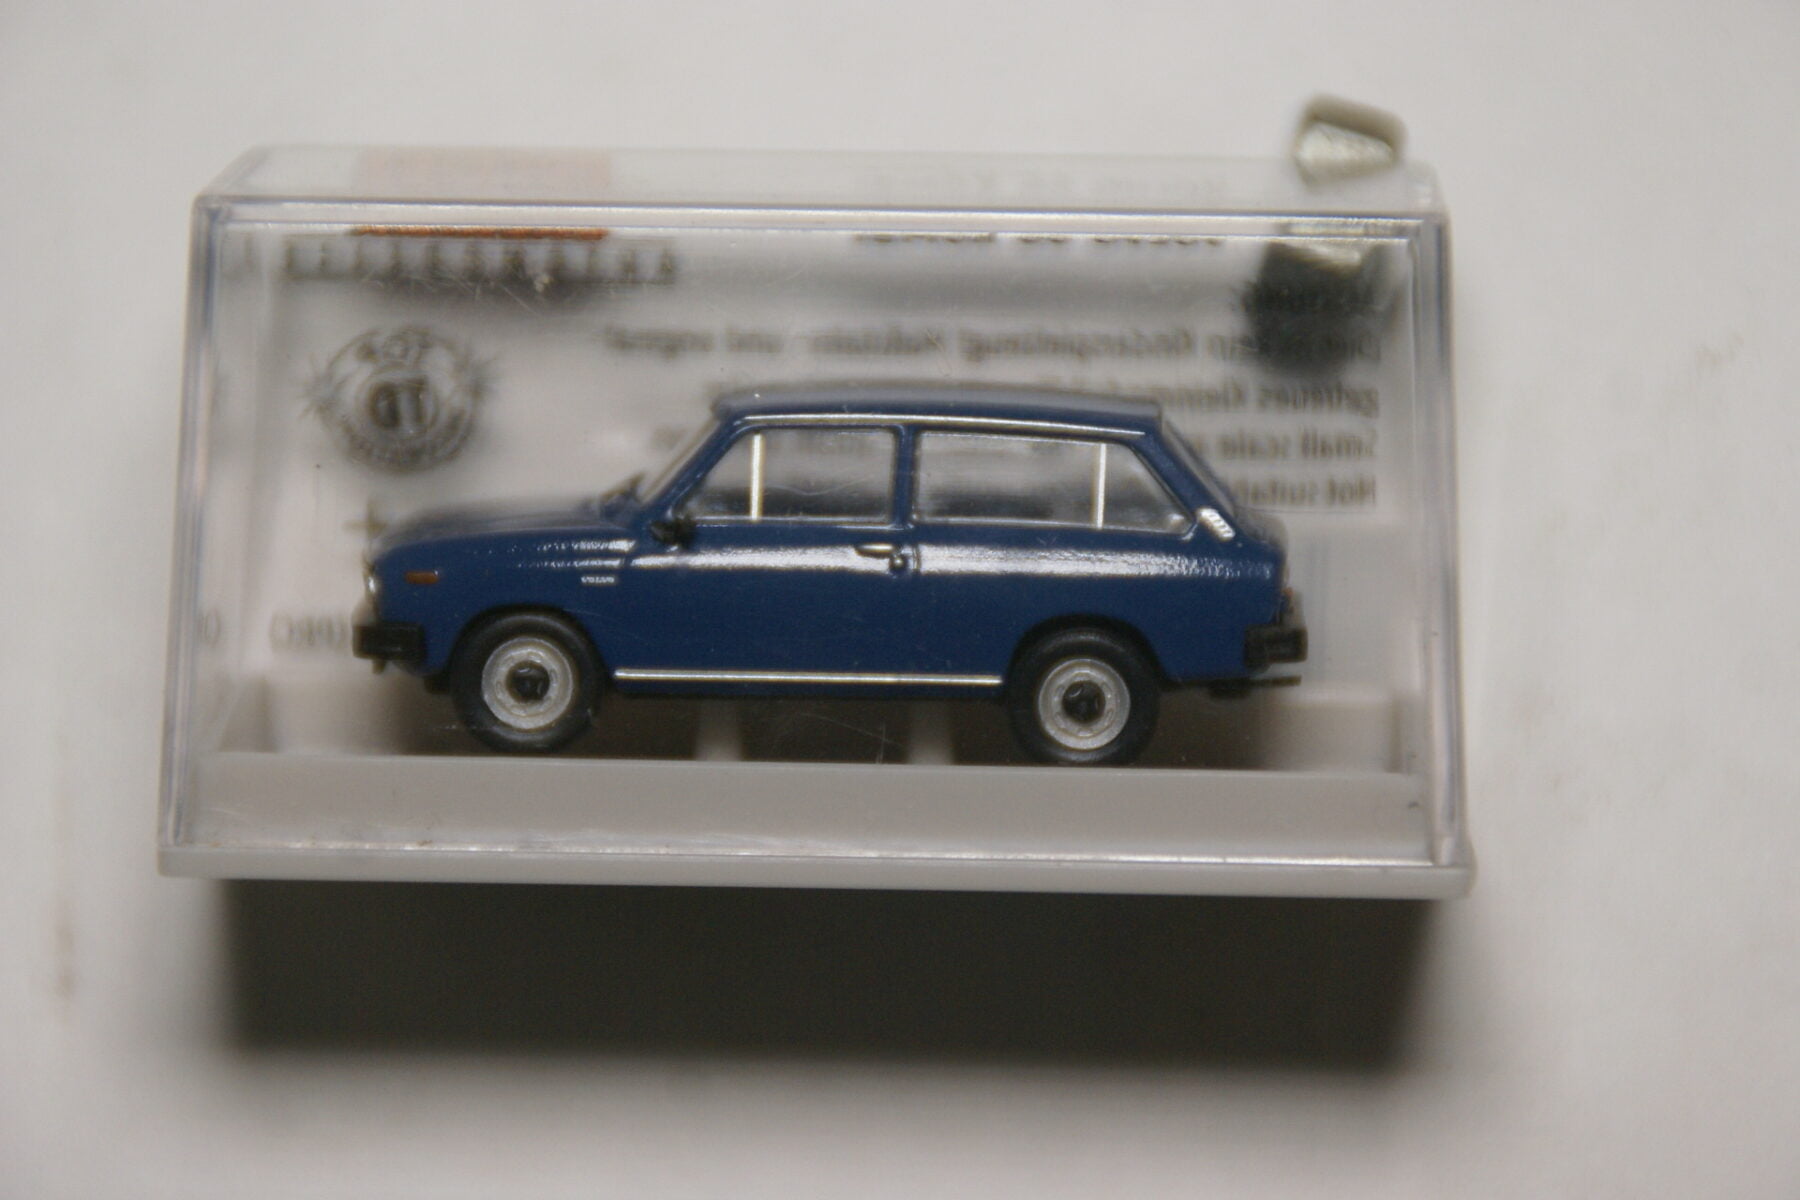 DSC09606 miniatuur Volvo 66 kombi blauw 1op87 Brekina nr 27629 MB-26378db9